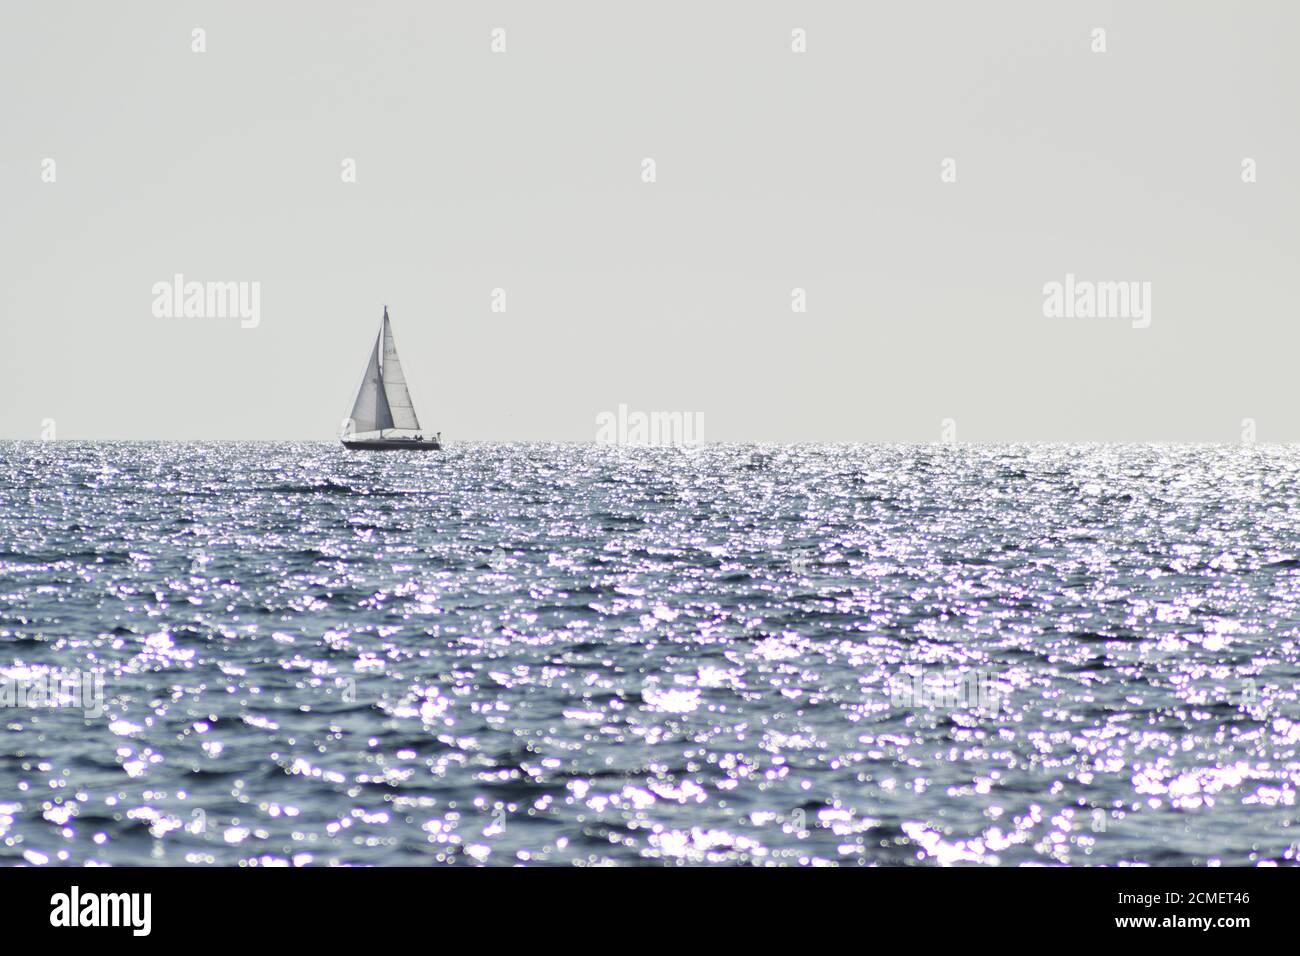 sailboat on glittering ocean Stock Photo